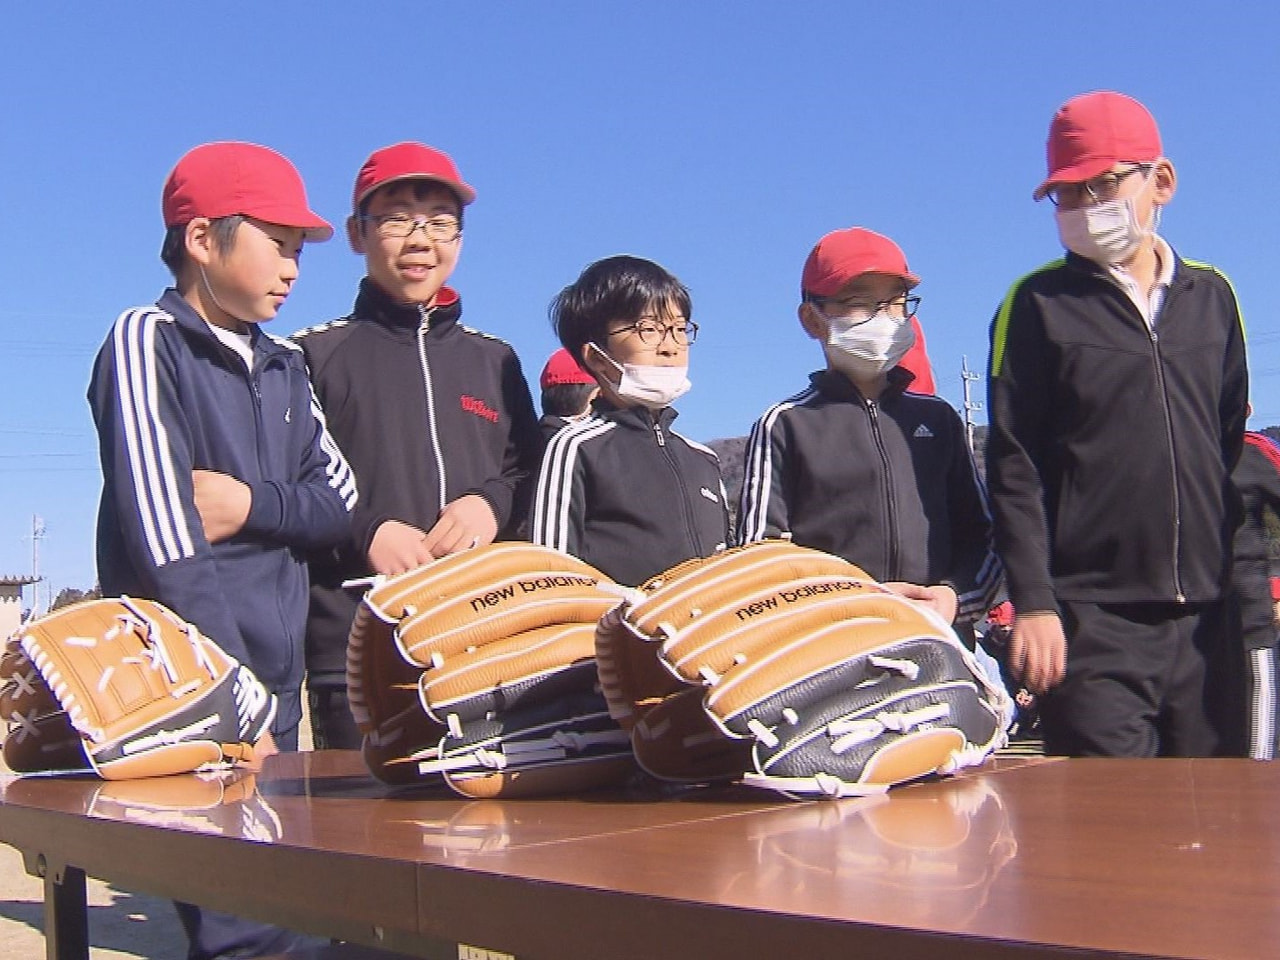 メジャーリーグ・ドジャースの大谷翔平選手が全国の小学校に贈ったグラブが土岐市の小...